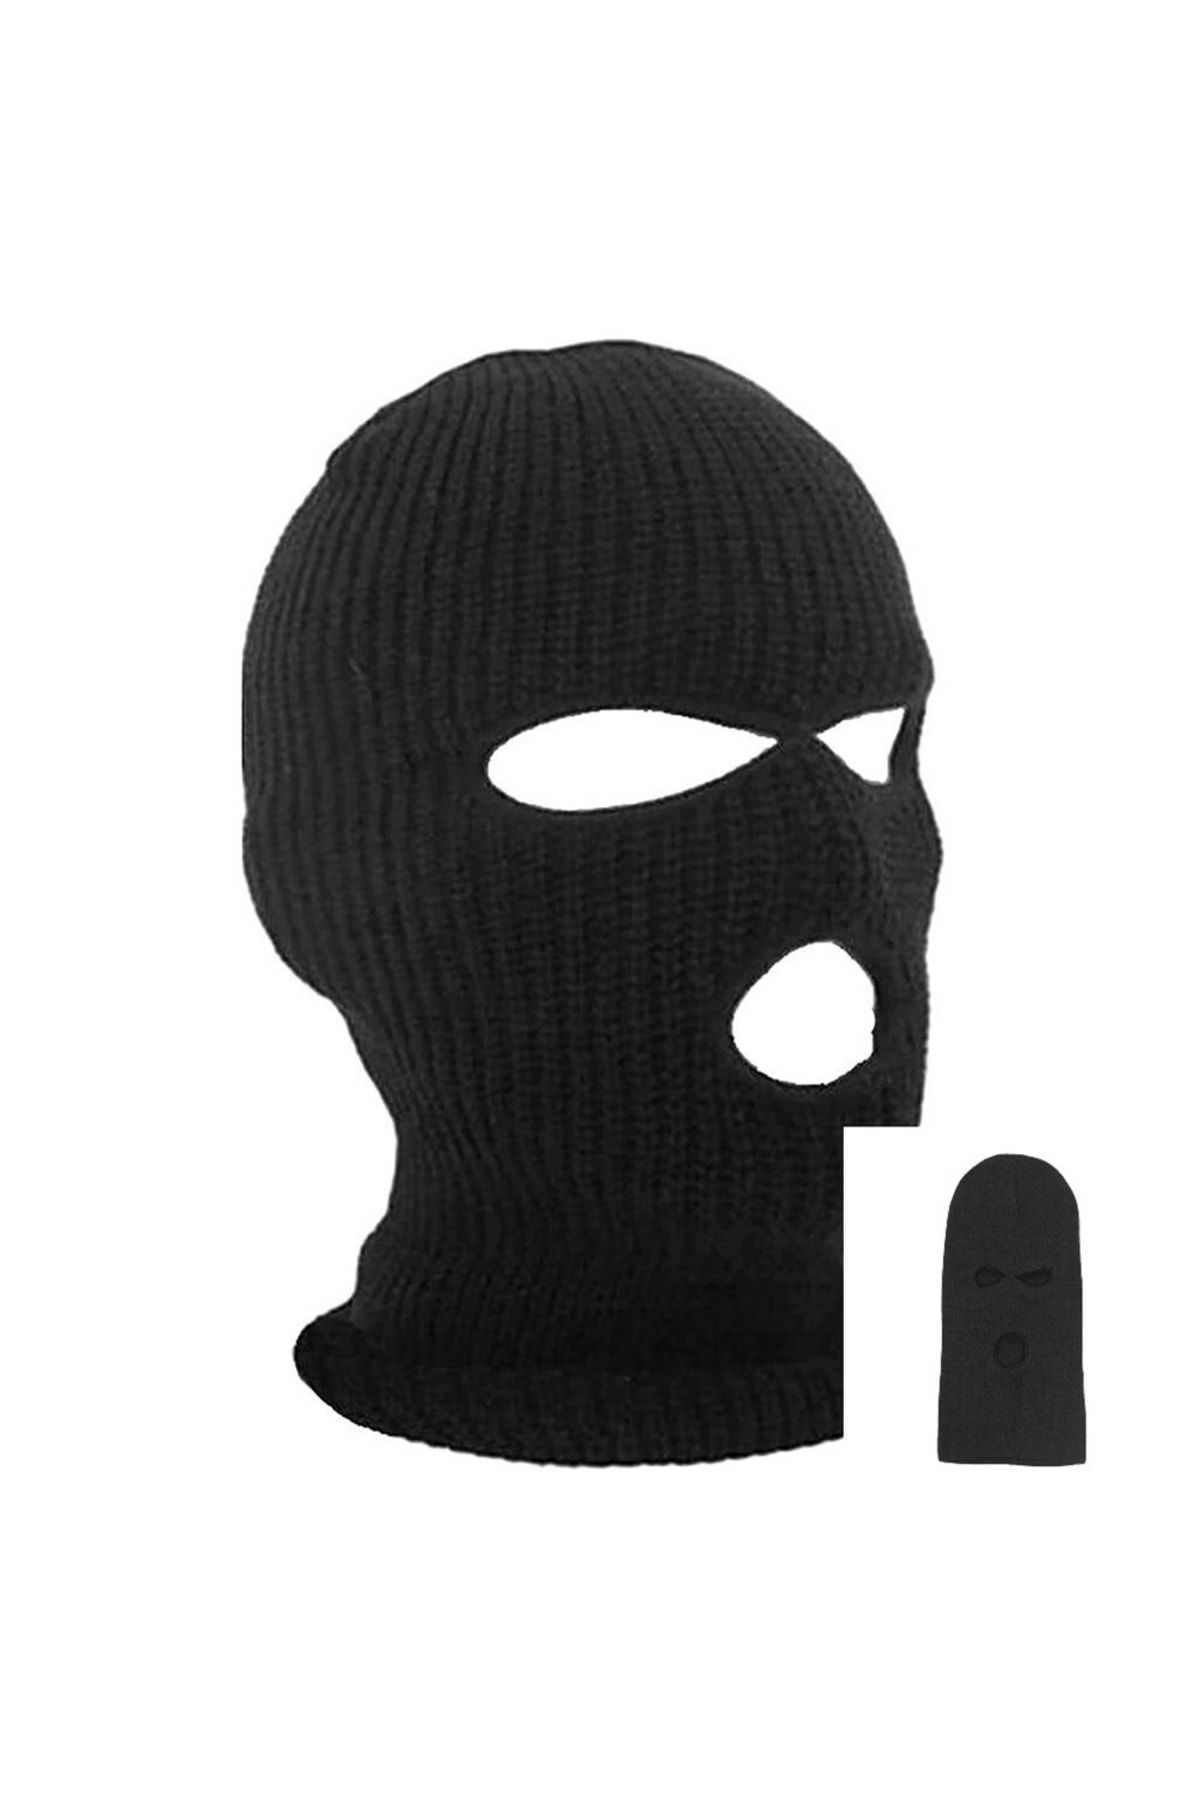 PAKER GİYİM Unisex Siyah Kışlık Triko Örme Üç Gözlü Bere Olabilen Kar Maskesi